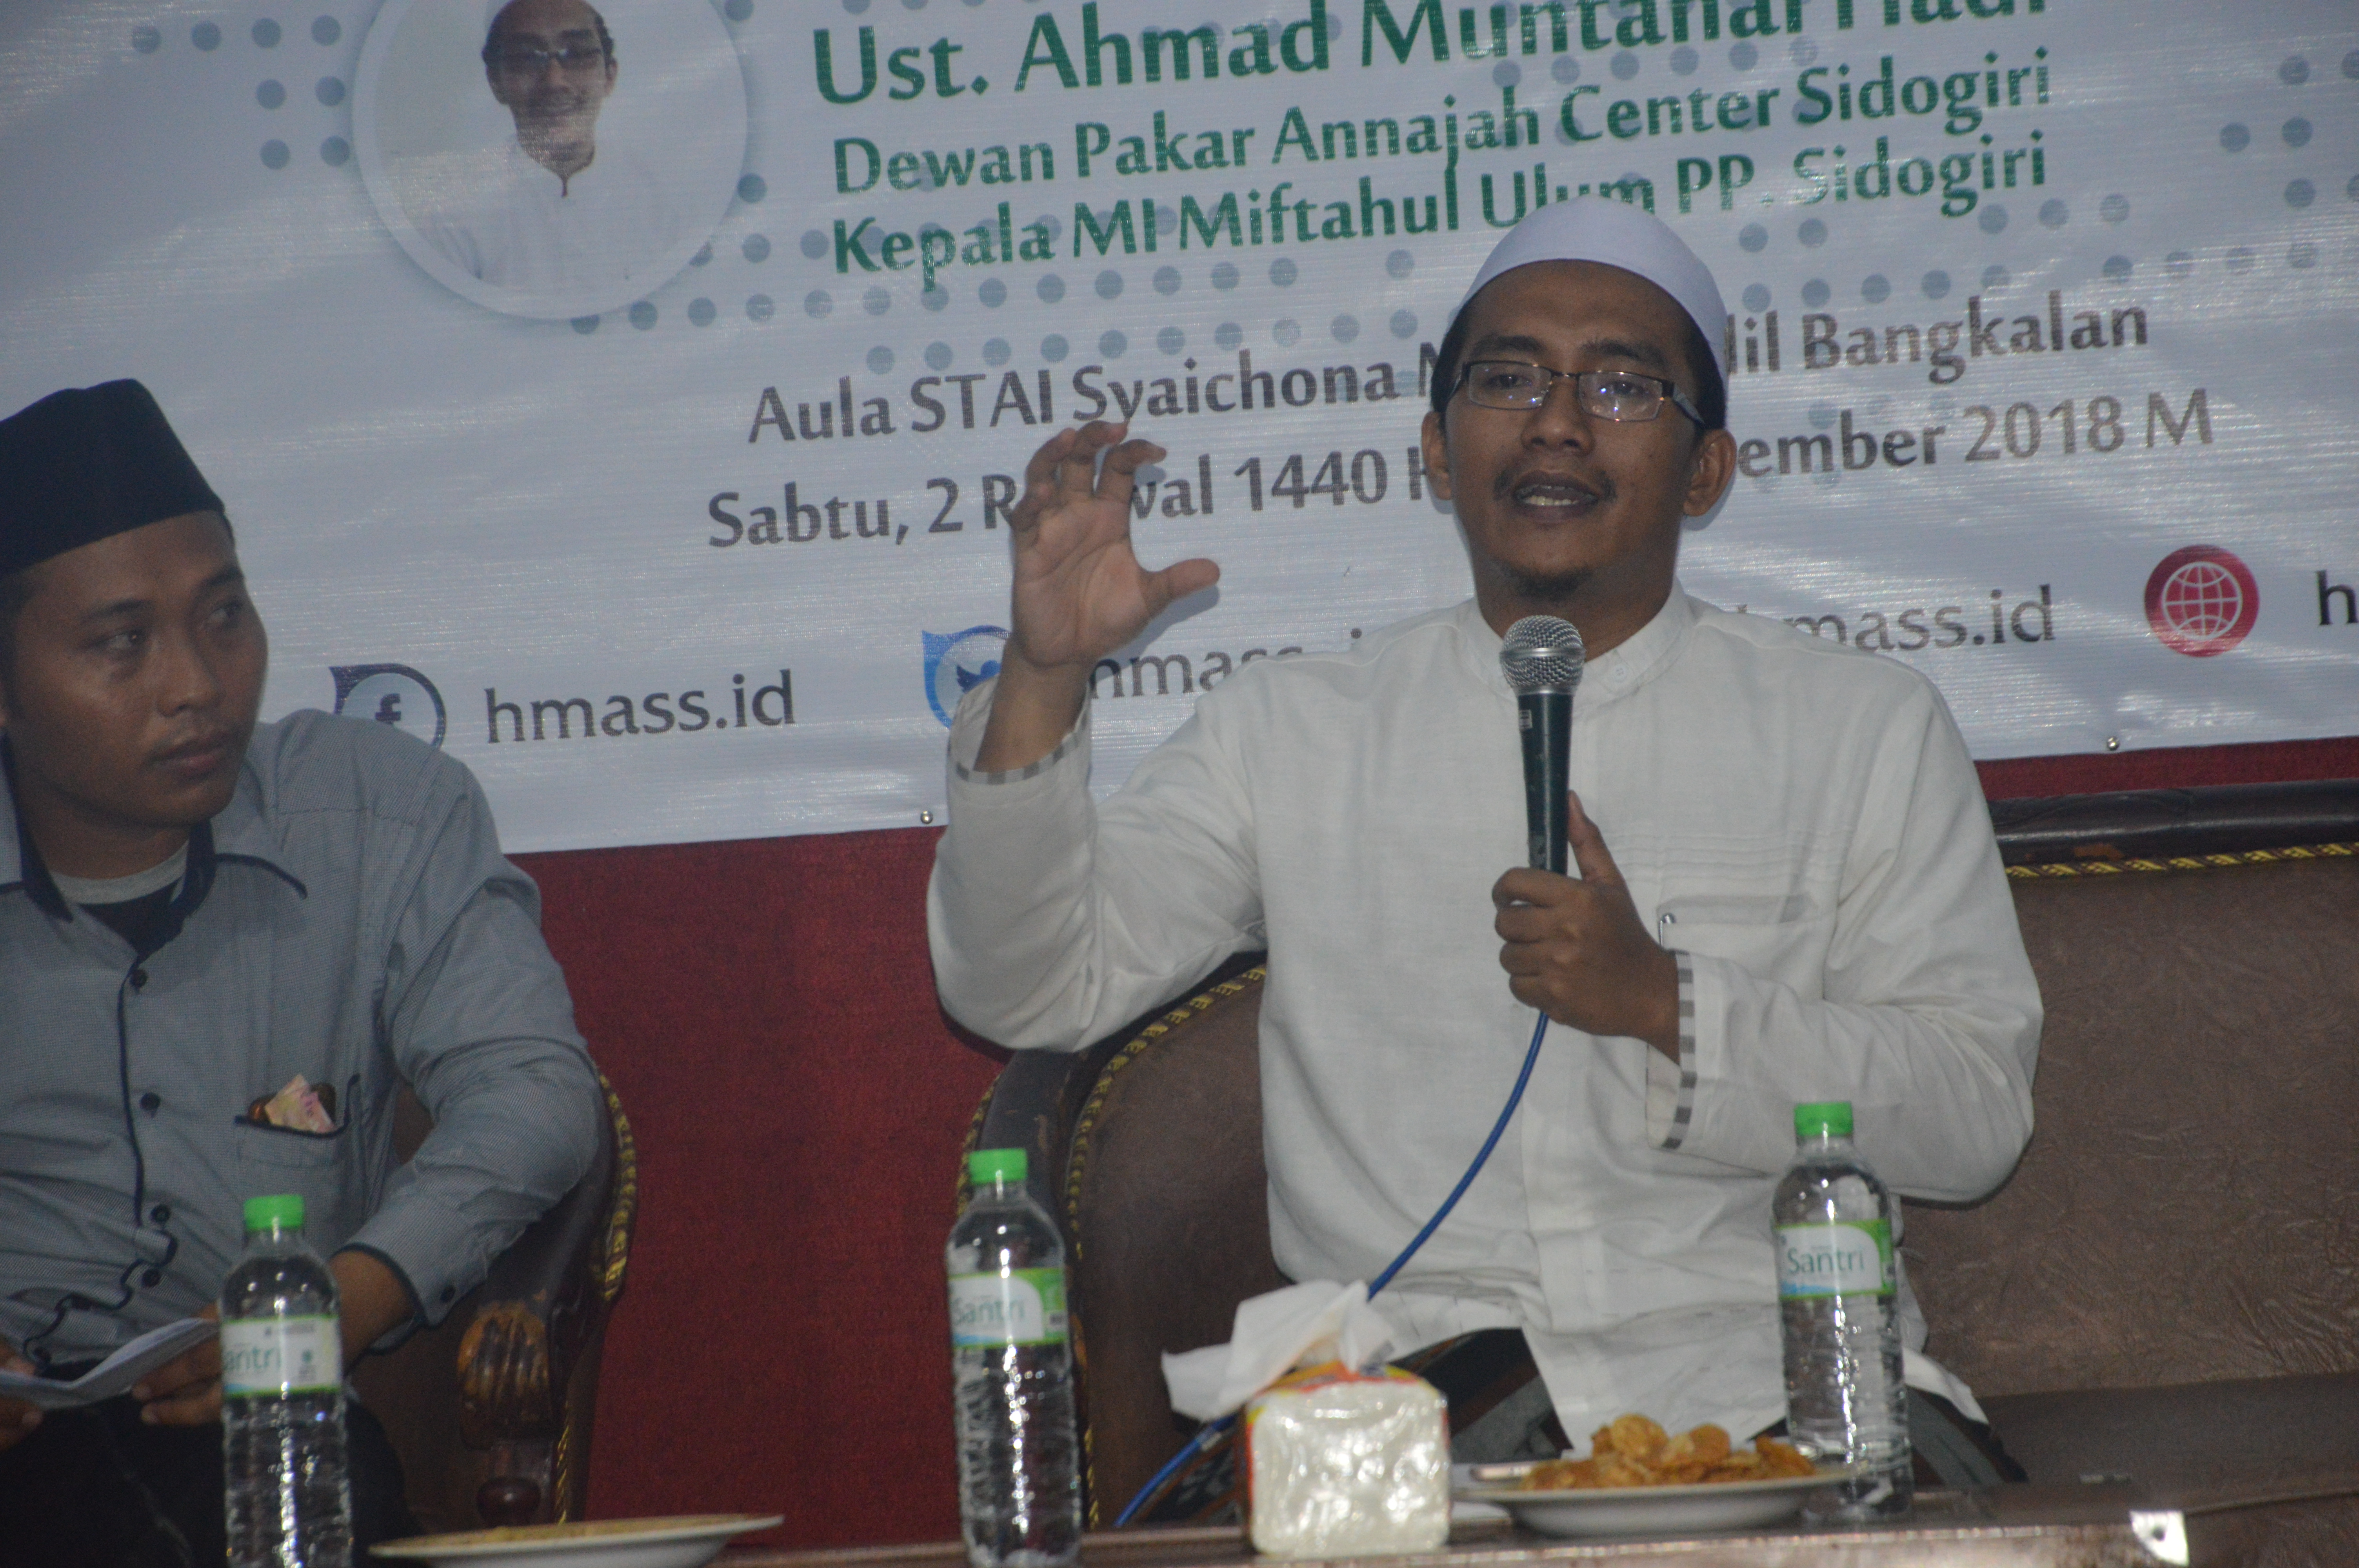 Indonesia Berjaya Bergantung Pada Umat Islam